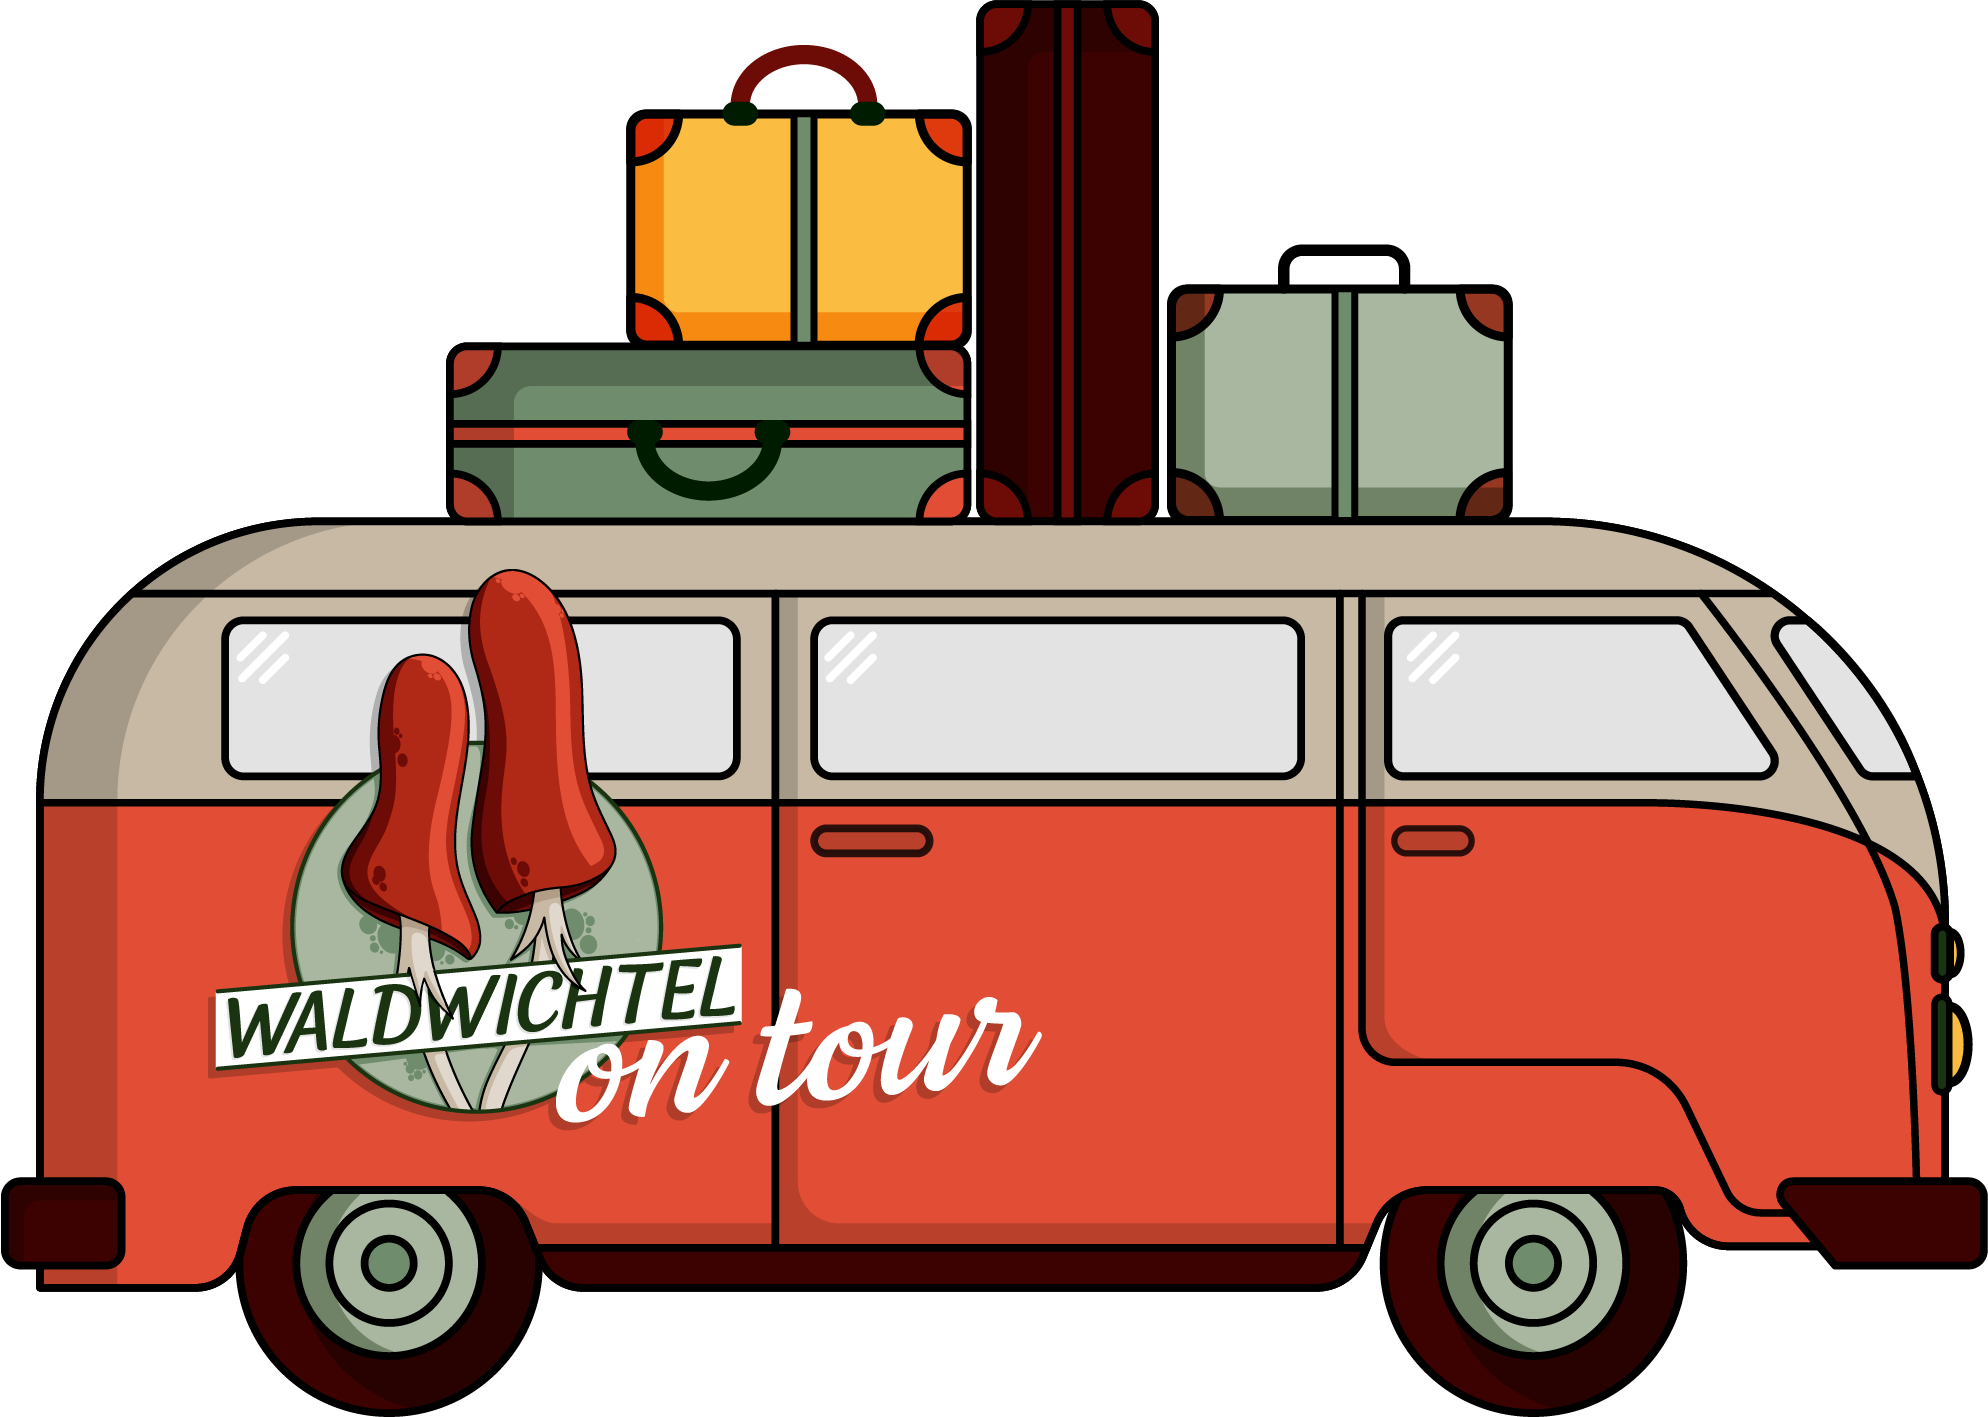 Waldwichtel shop on tour illustration